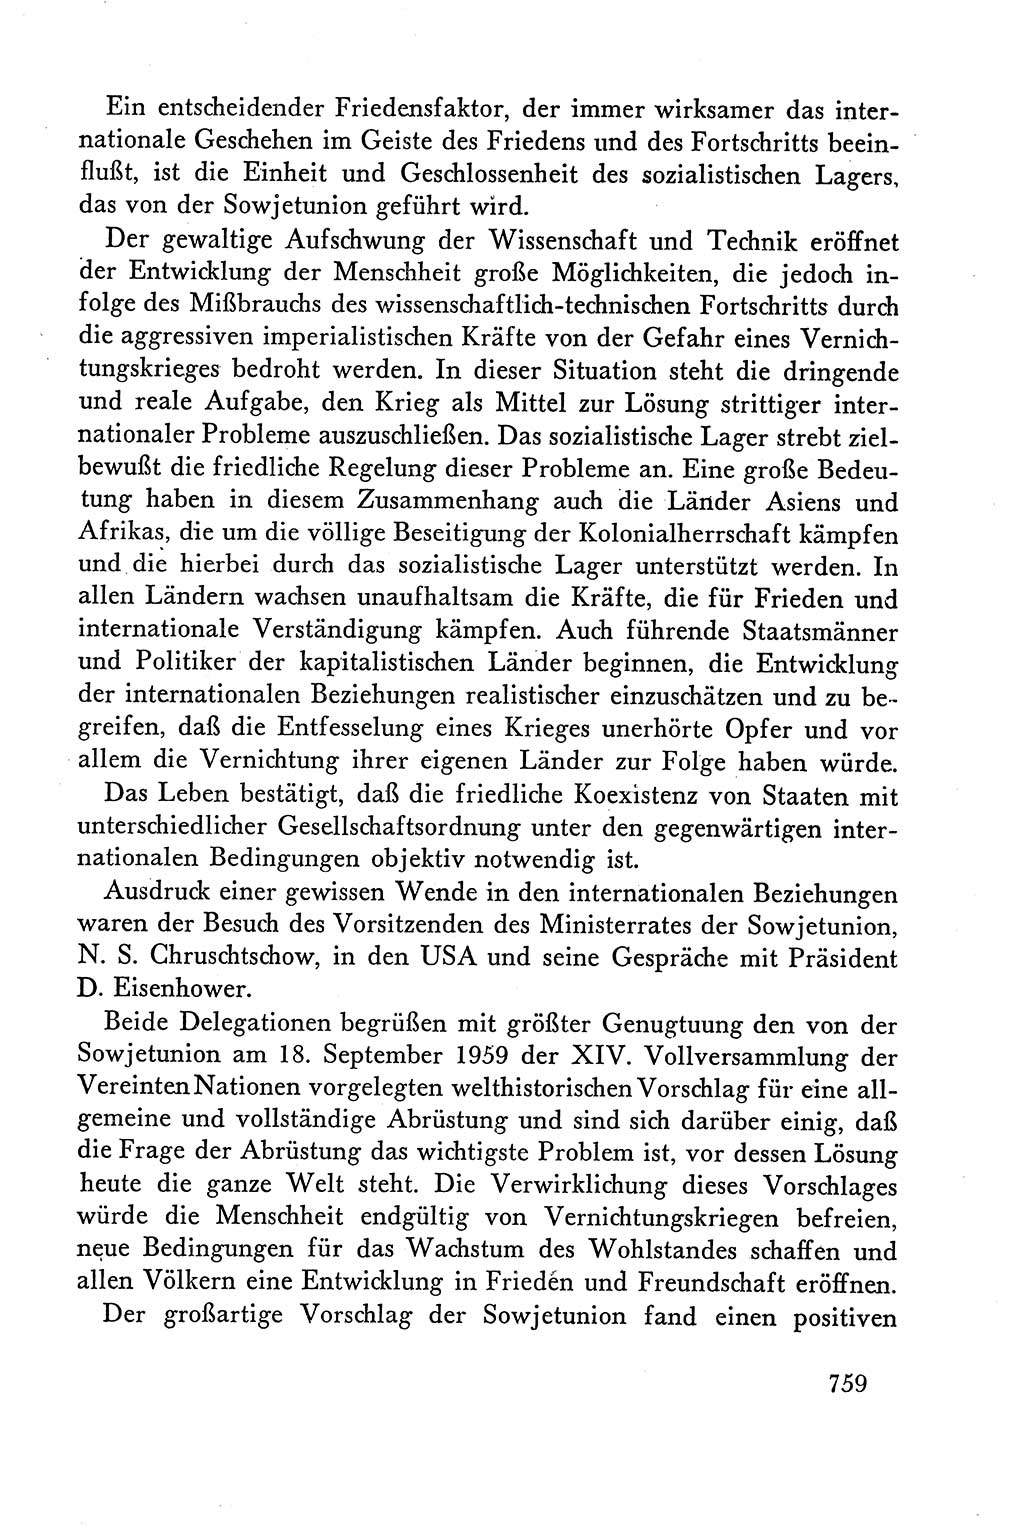 Dokumente der Sozialistischen Einheitspartei Deutschlands (SED) [Deutsche Demokratische Republik (DDR)] 1958-1959, Seite 759 (Dok. SED DDR 1958-1959, S. 759)